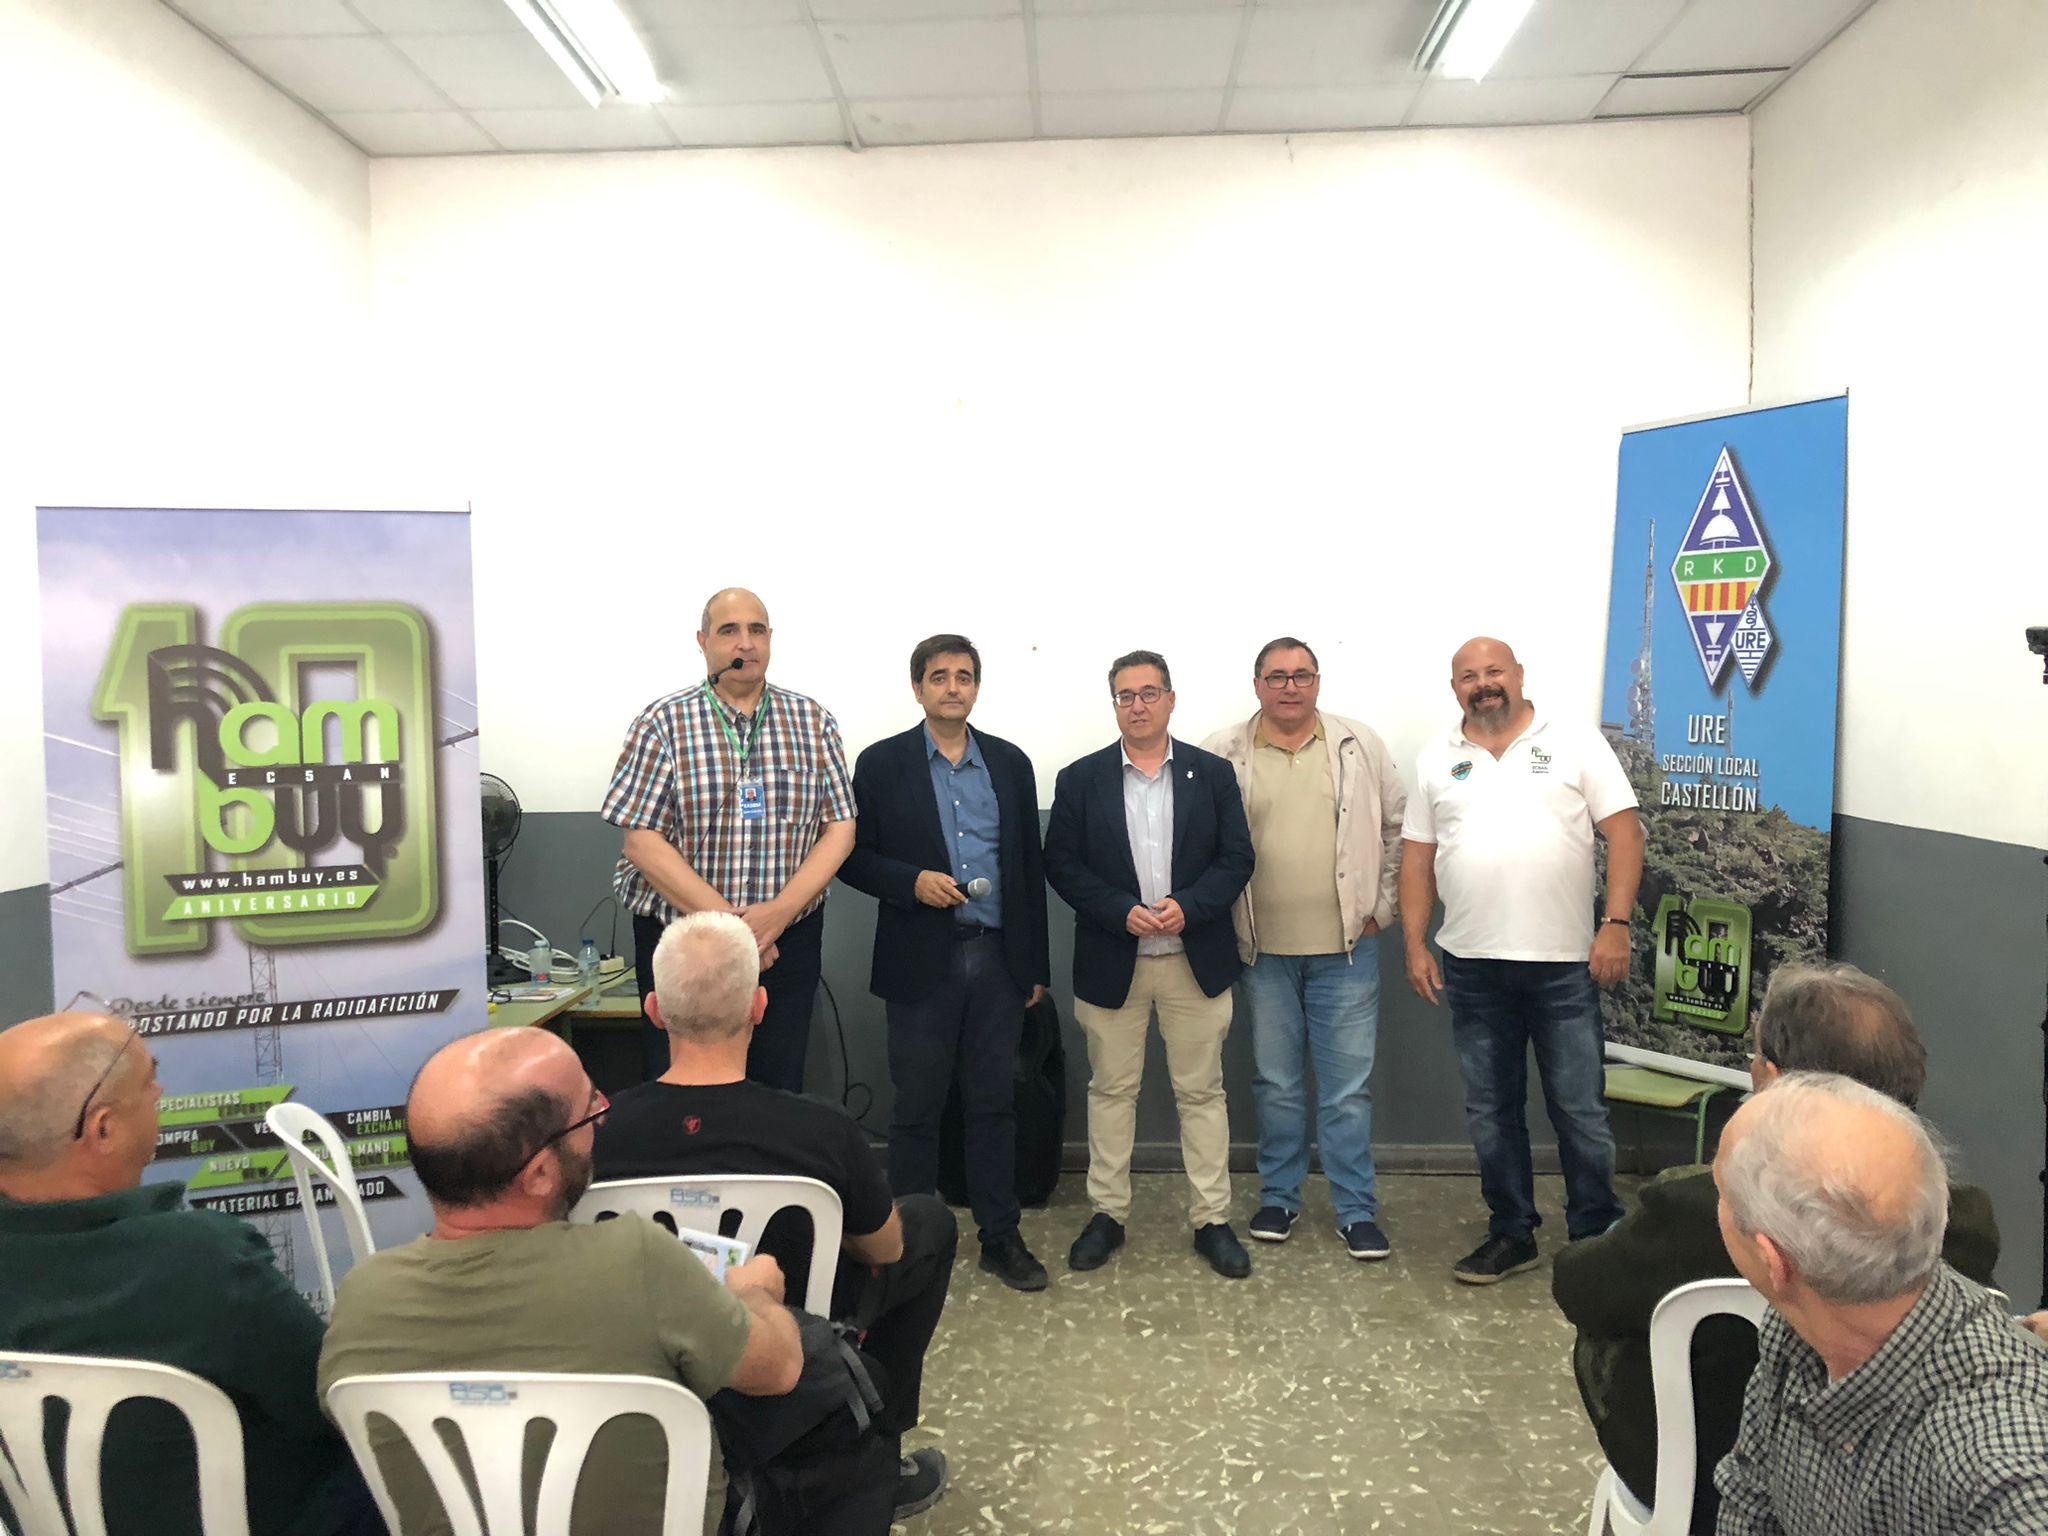 El concejal de Modernización participa en una conferencia sobre la historia de la radioafición en la provincia de Castellón